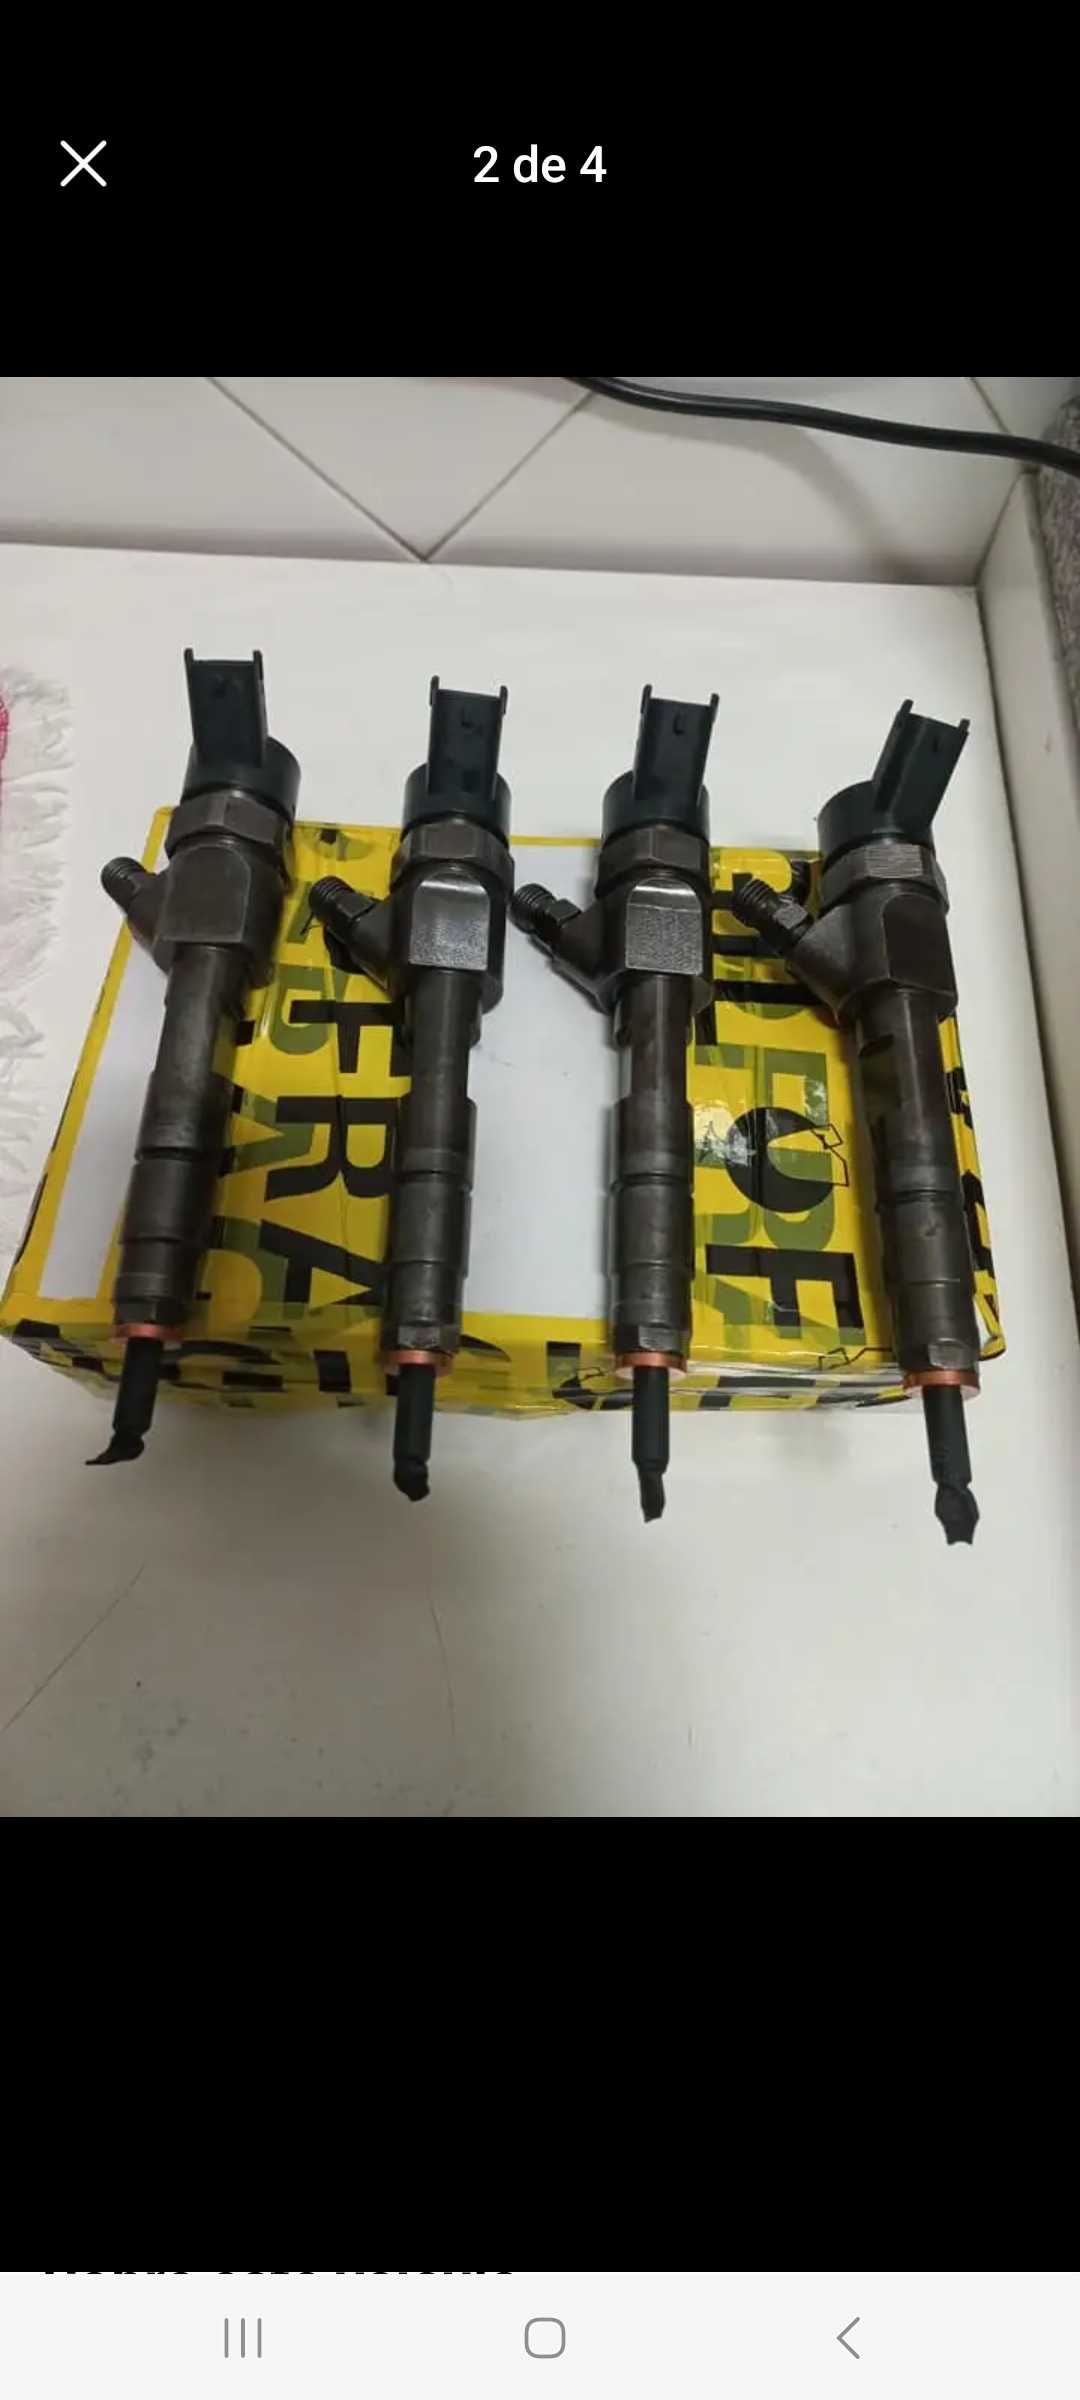 Injectores Renault Laguna dci